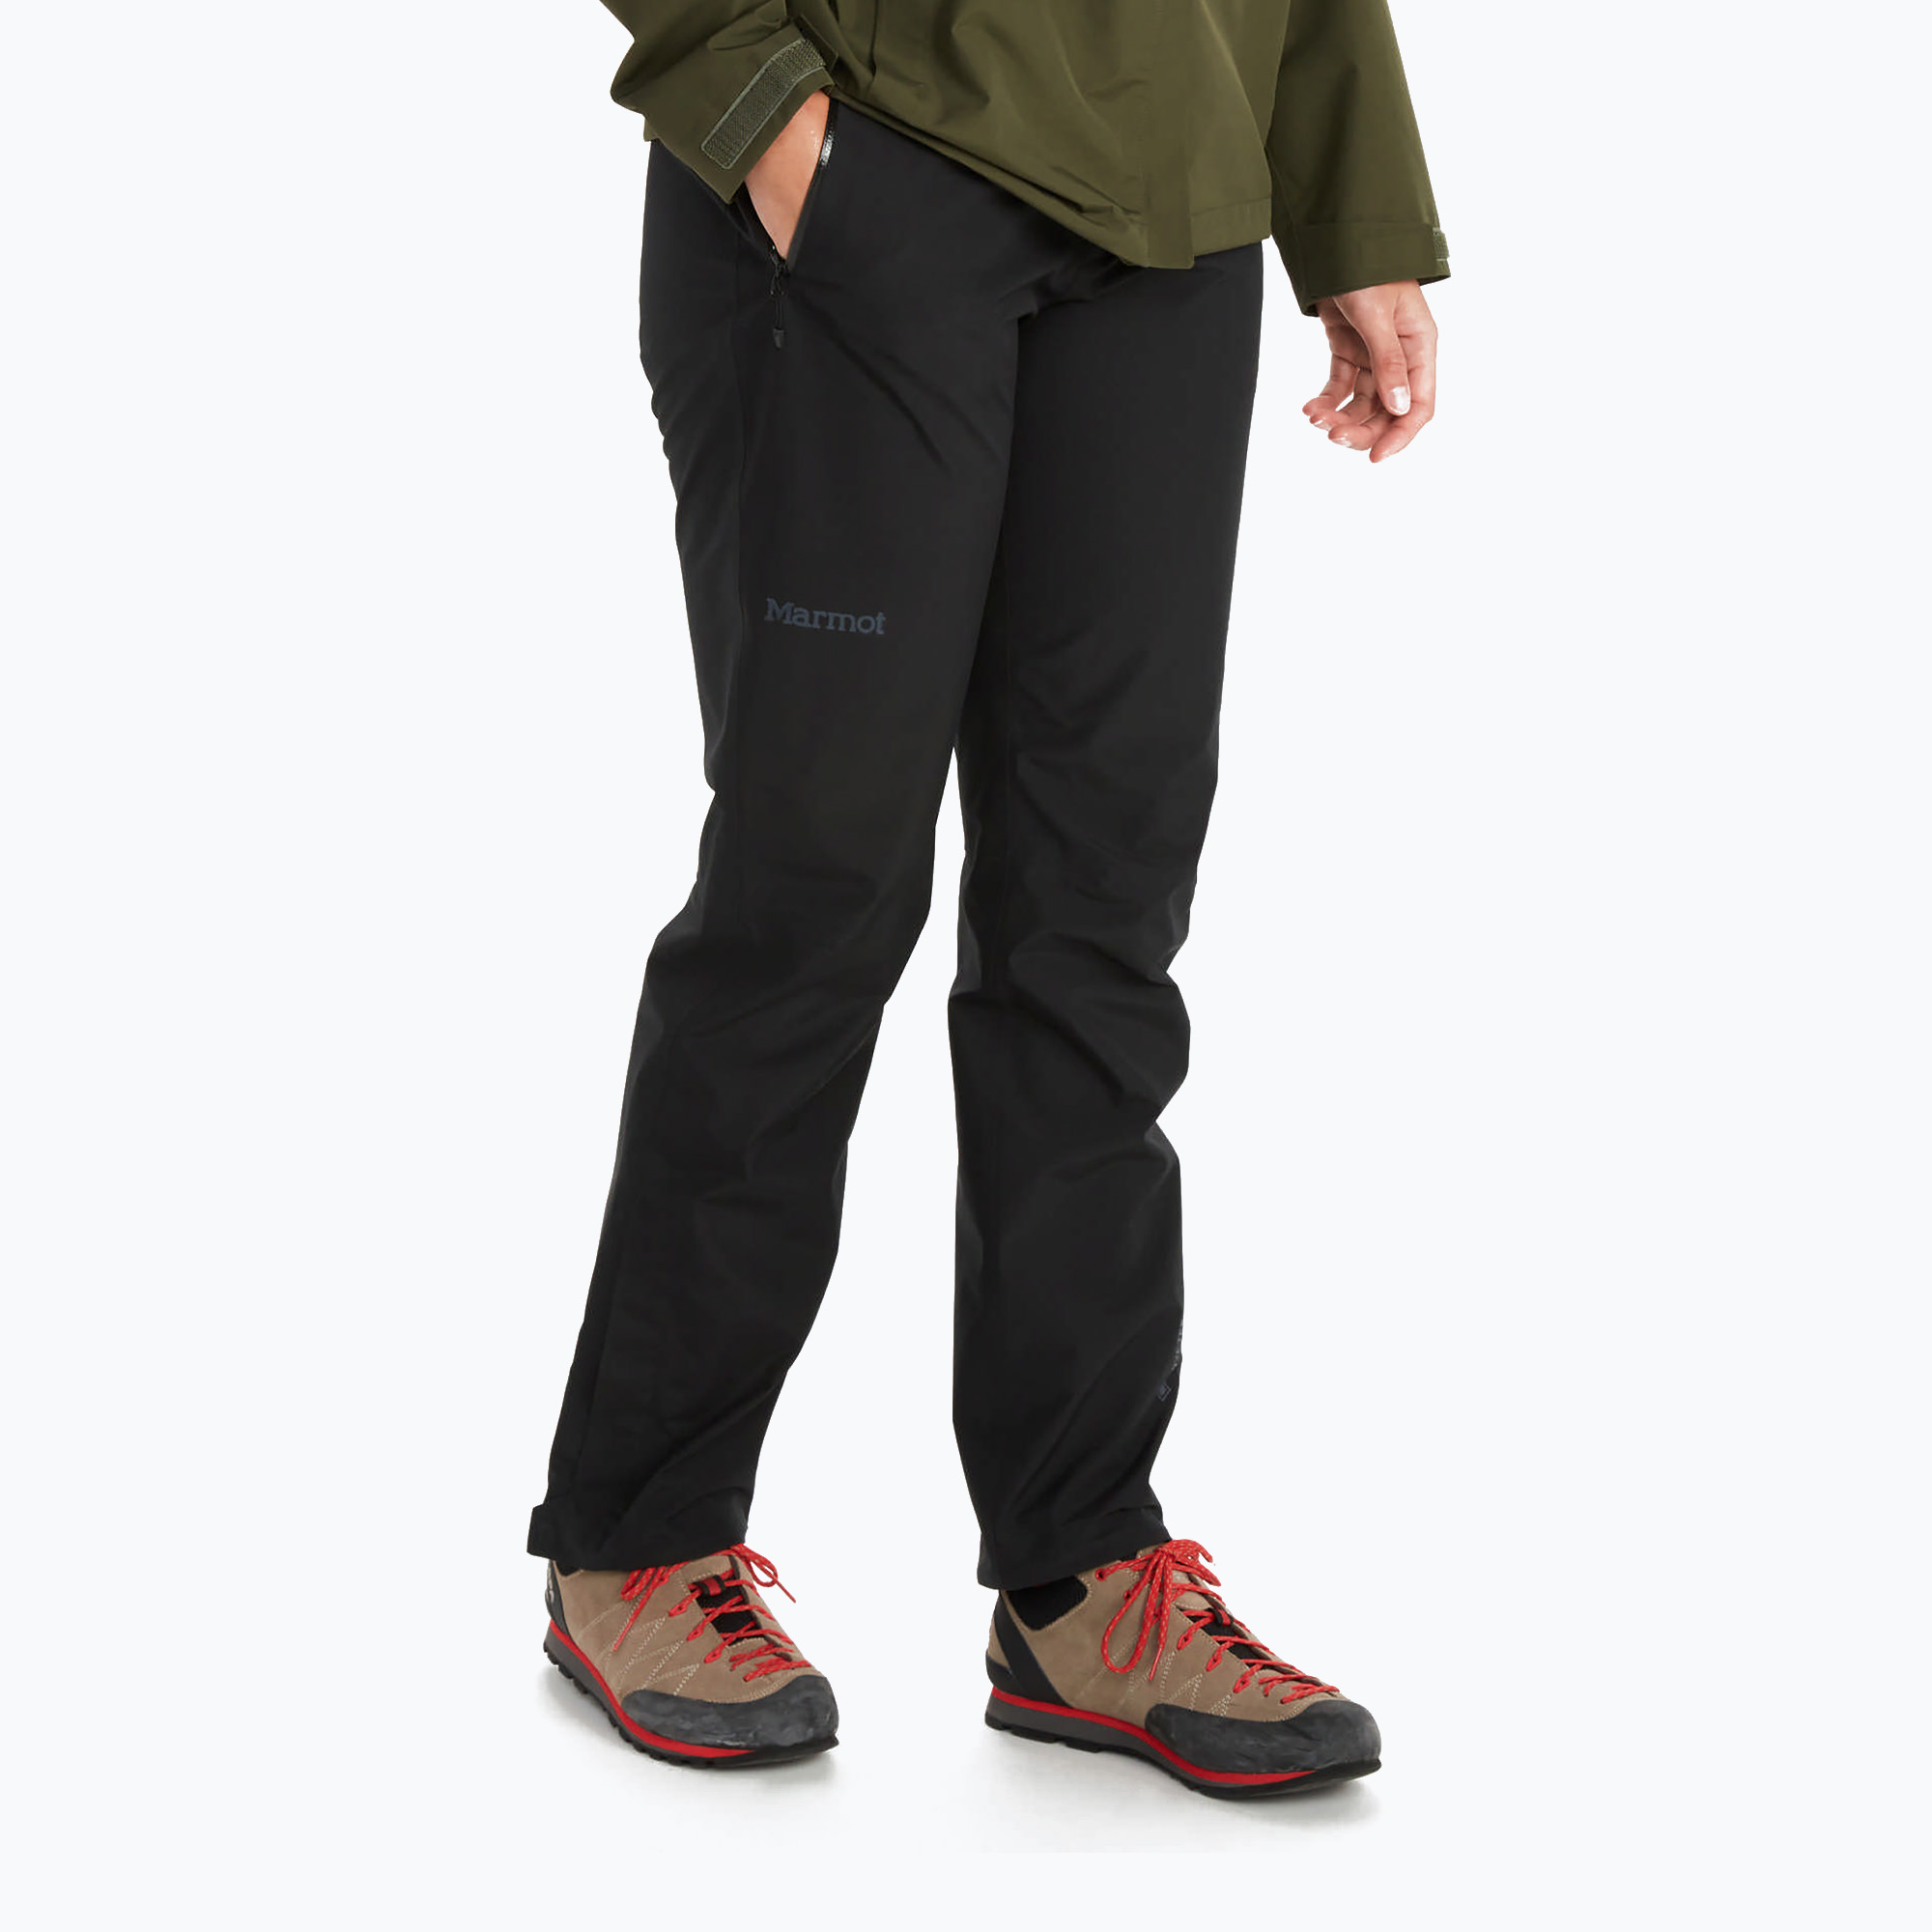 Дамски панталон с мембрана Marmot Minimalist черен M12684